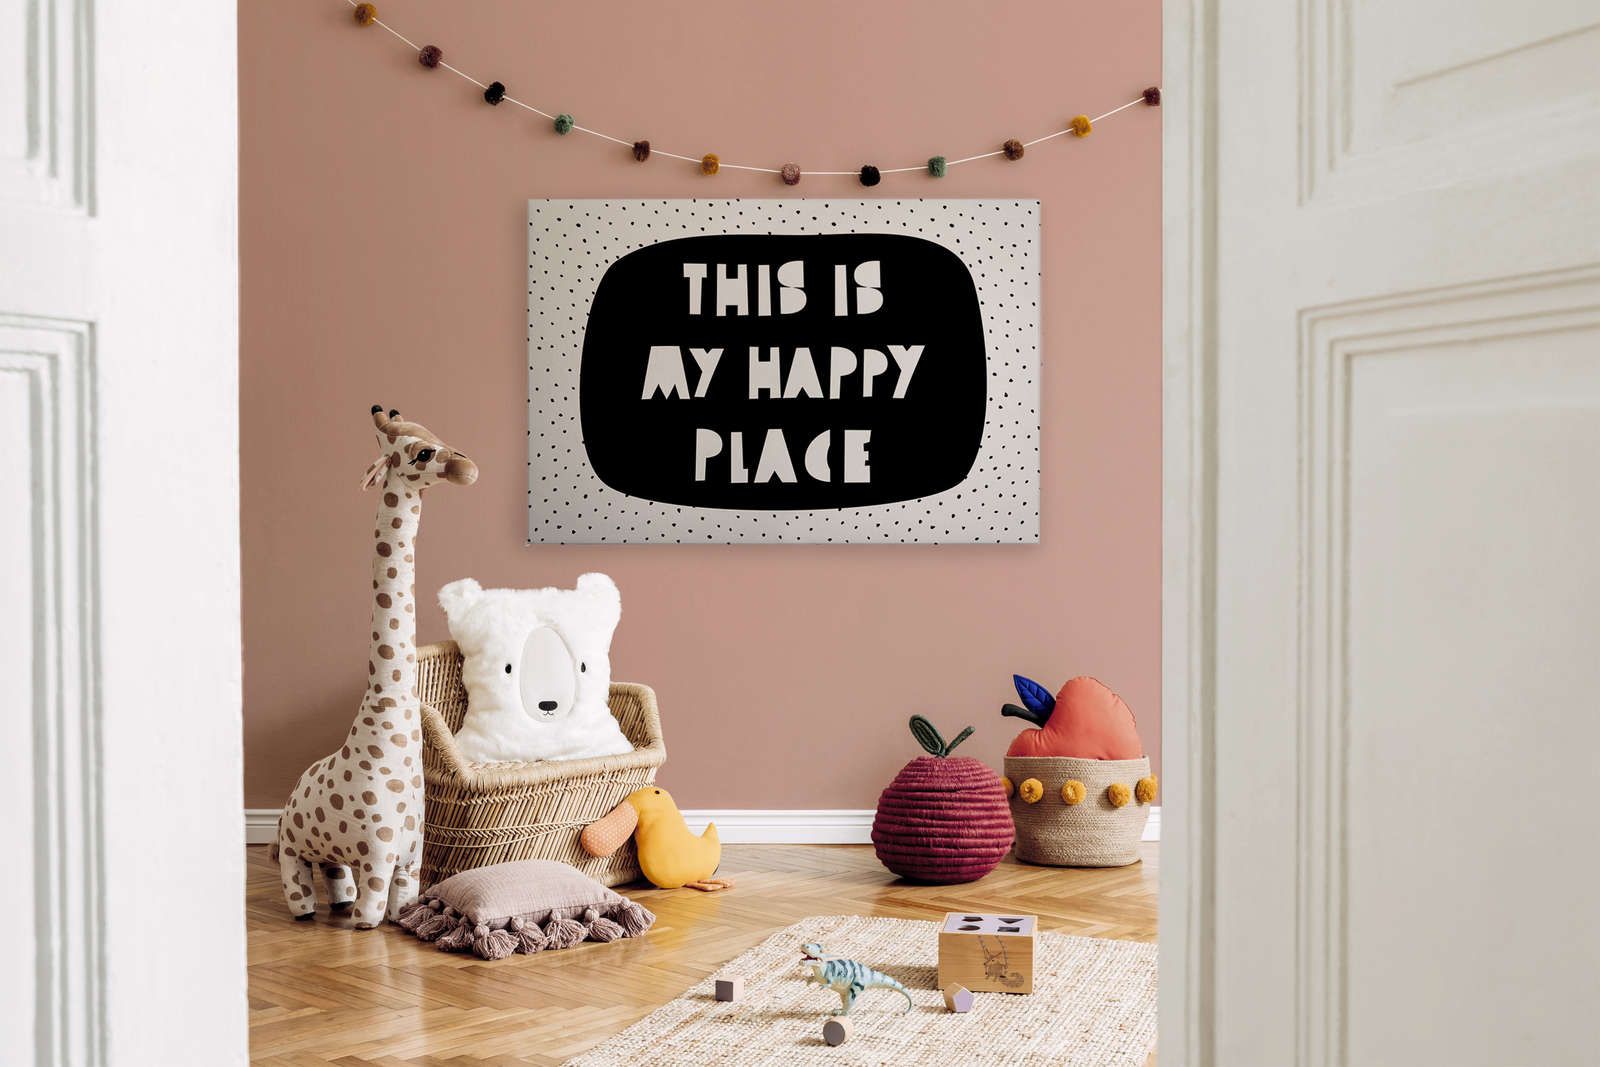             Toile pour chambre d'enfant avec inscription "This is my happy place" - 120 cm x 80 cm
        